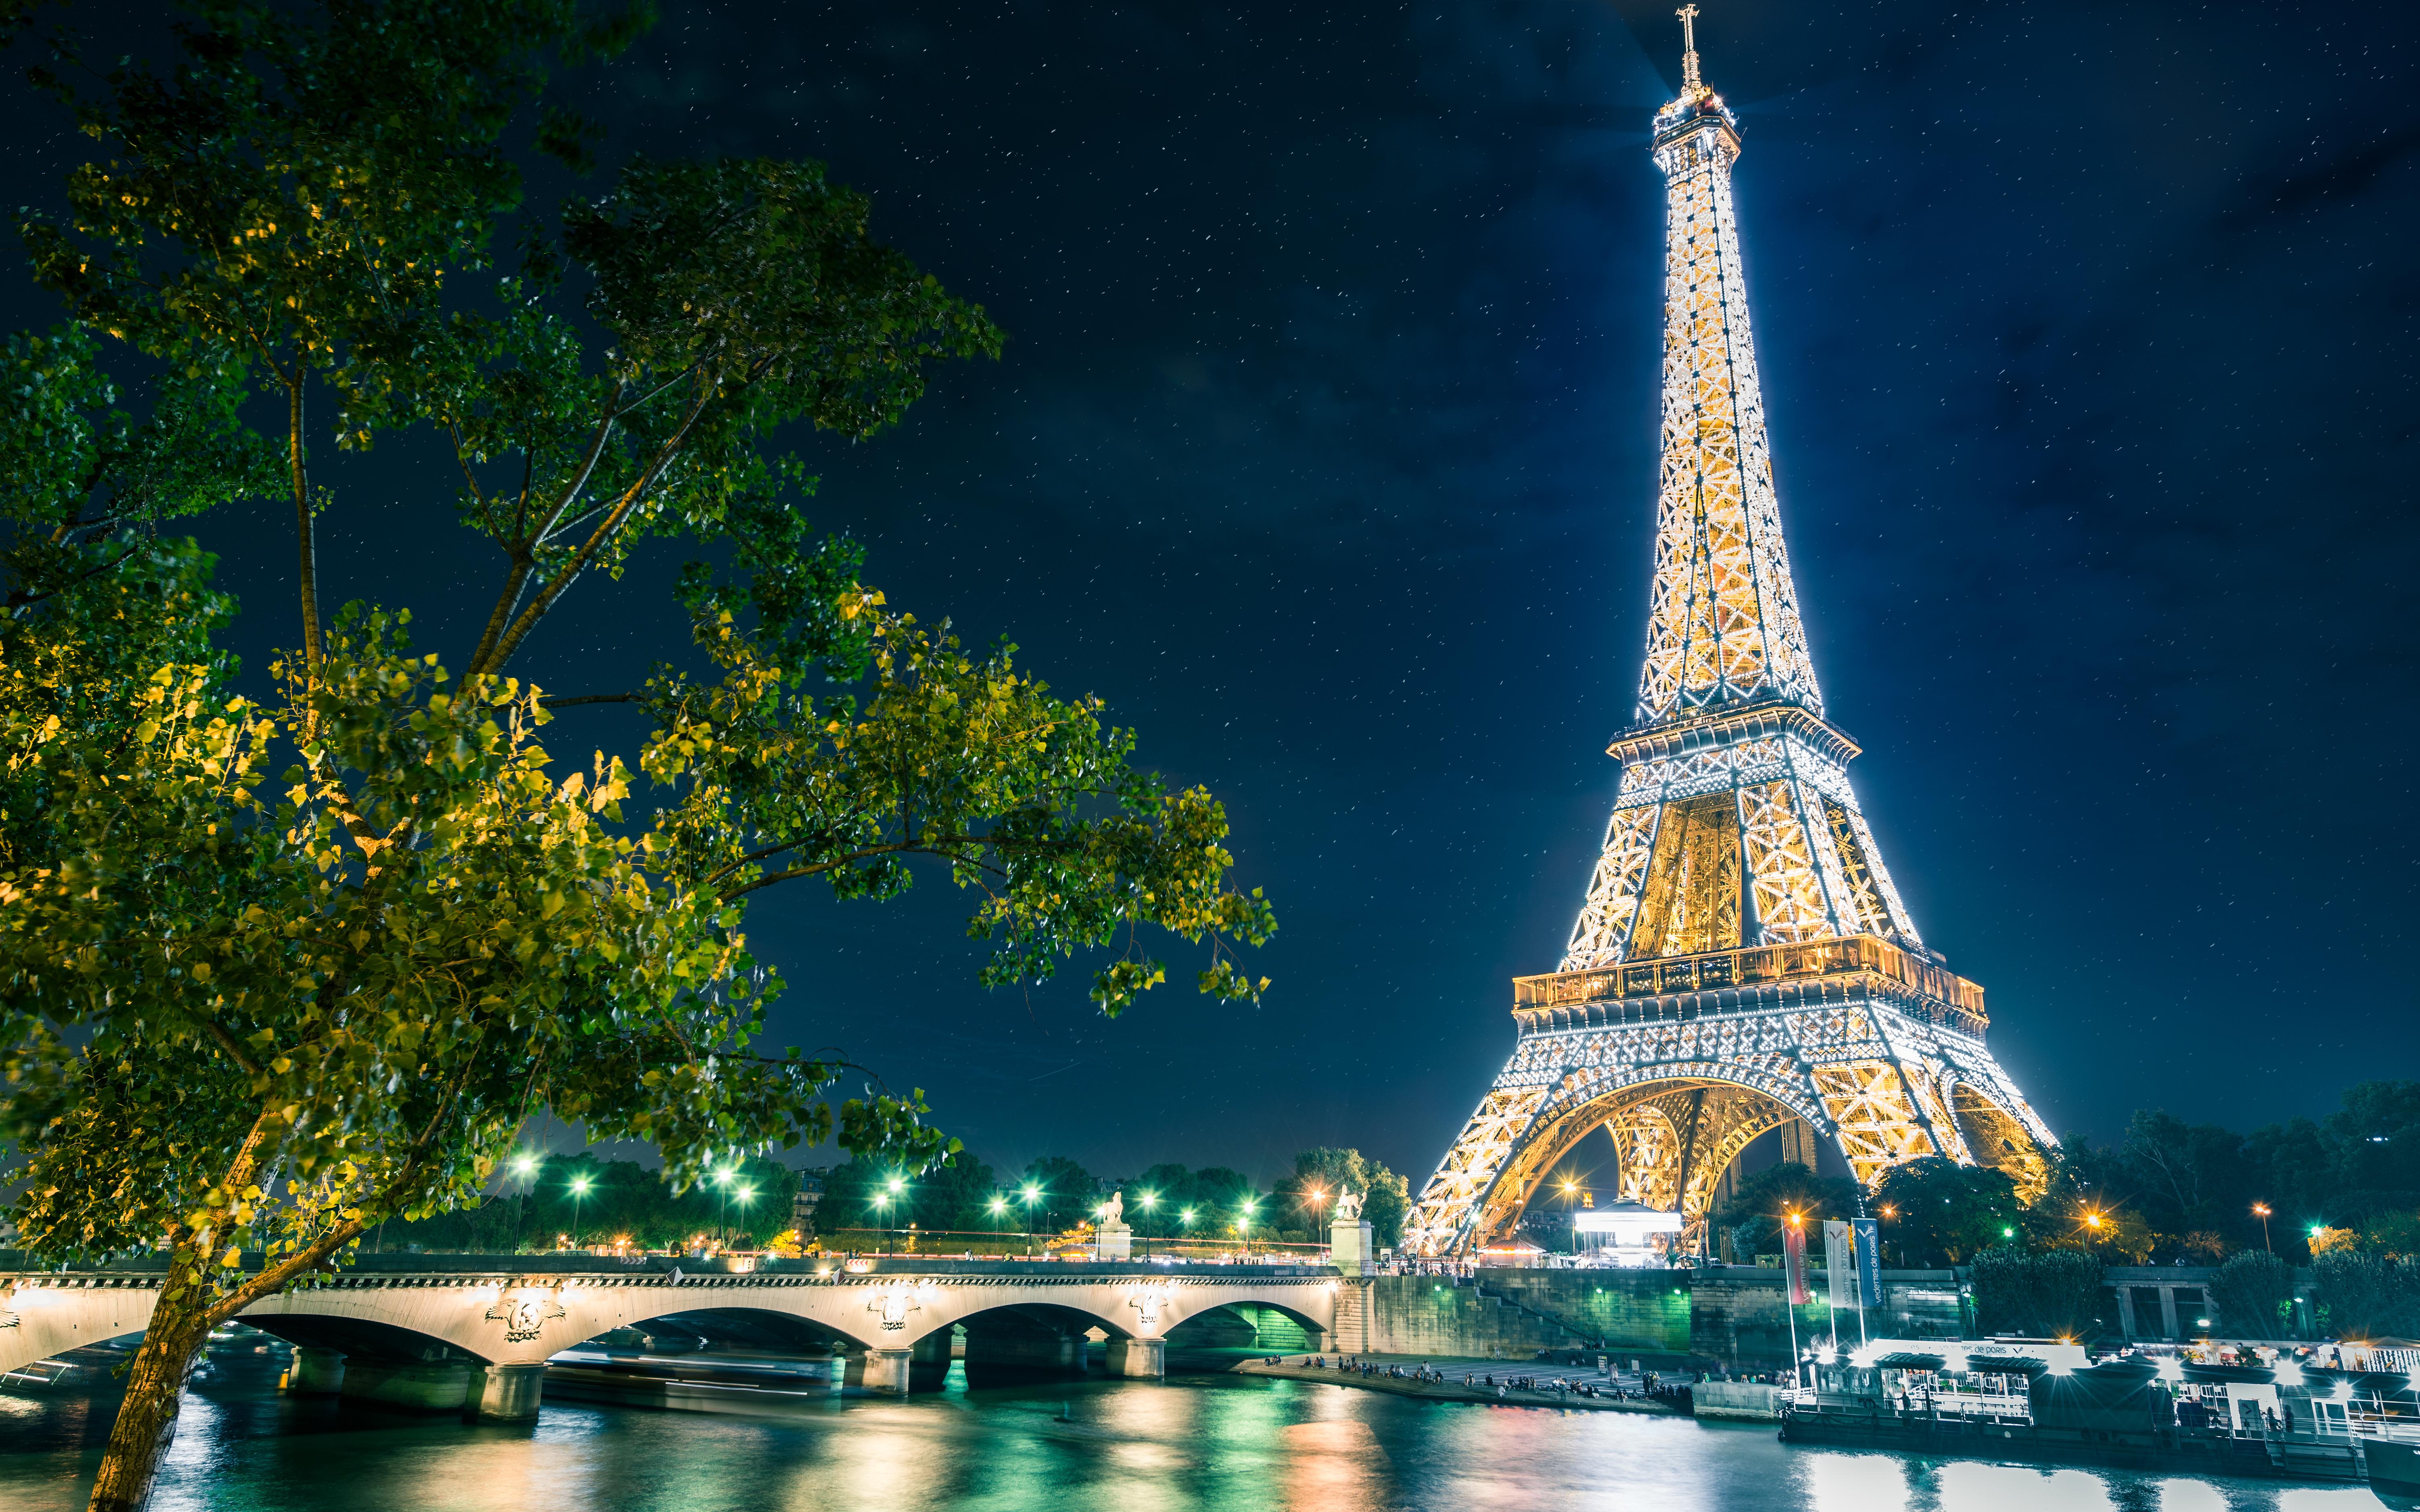 Обои на телефон самые красивые в мире. Эйфелева башня в Париже. Париж и Эйфелева башня и Париж. Эйфелева башня в Париже ночью. Эйфелева башня. Г. А. Эйфель.